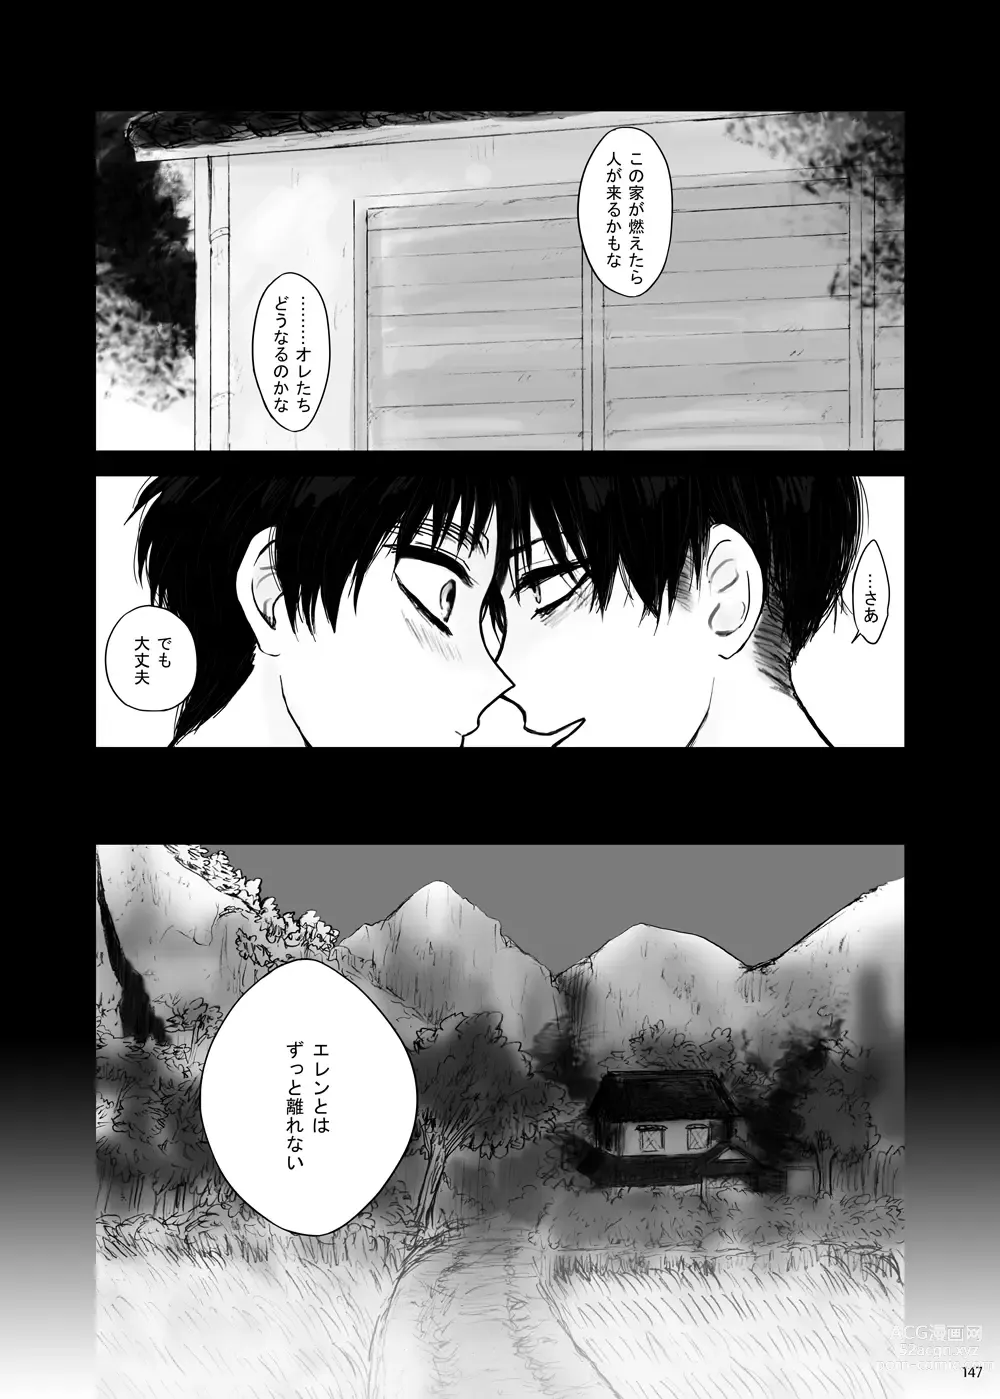 Page 72 of doujinshi Kankin Sareta Kyoudai no Hanashi.